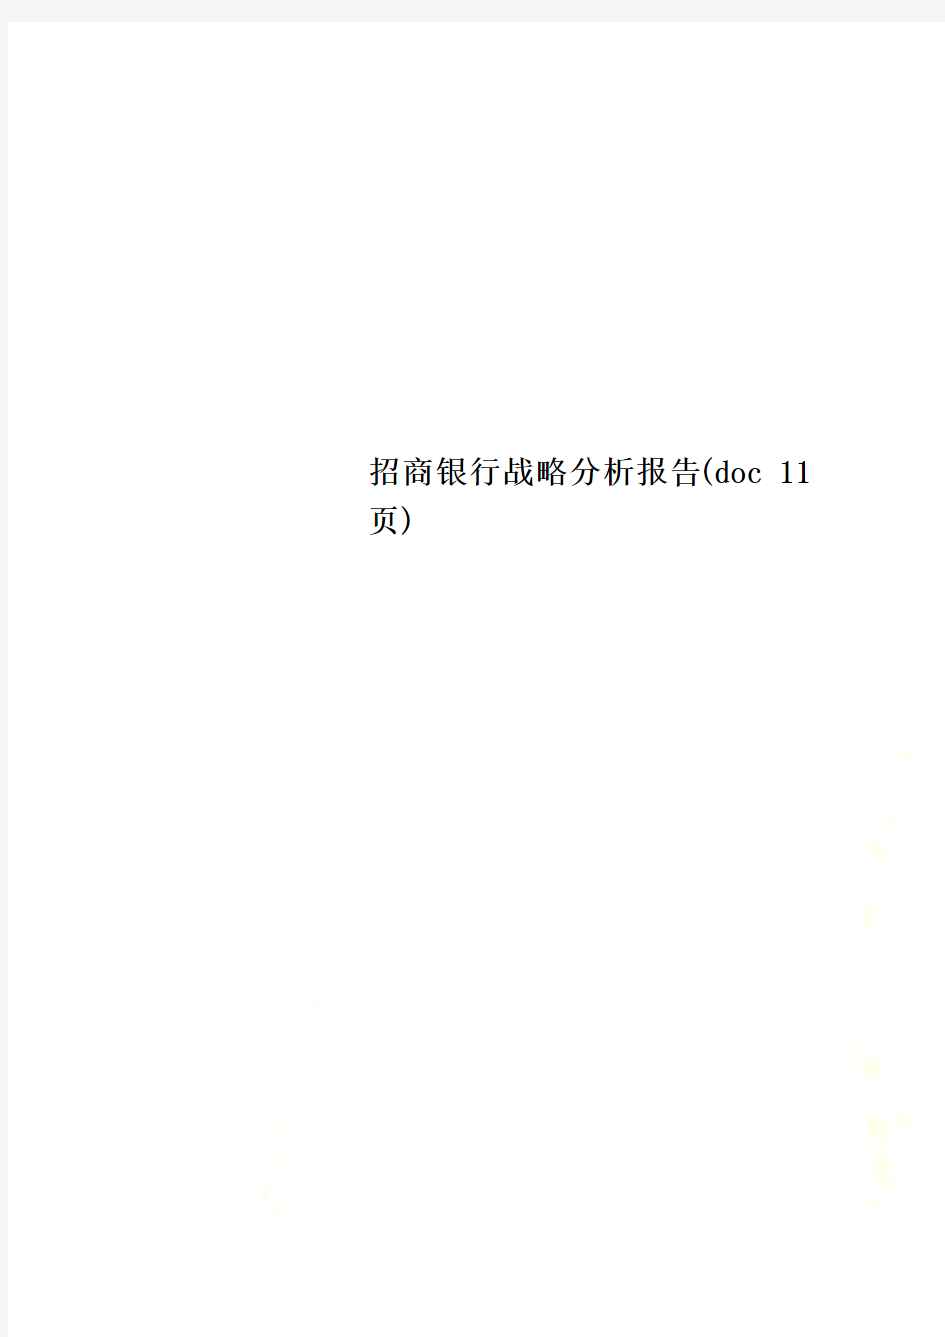 招商银行战略分析报告(doc 11页)